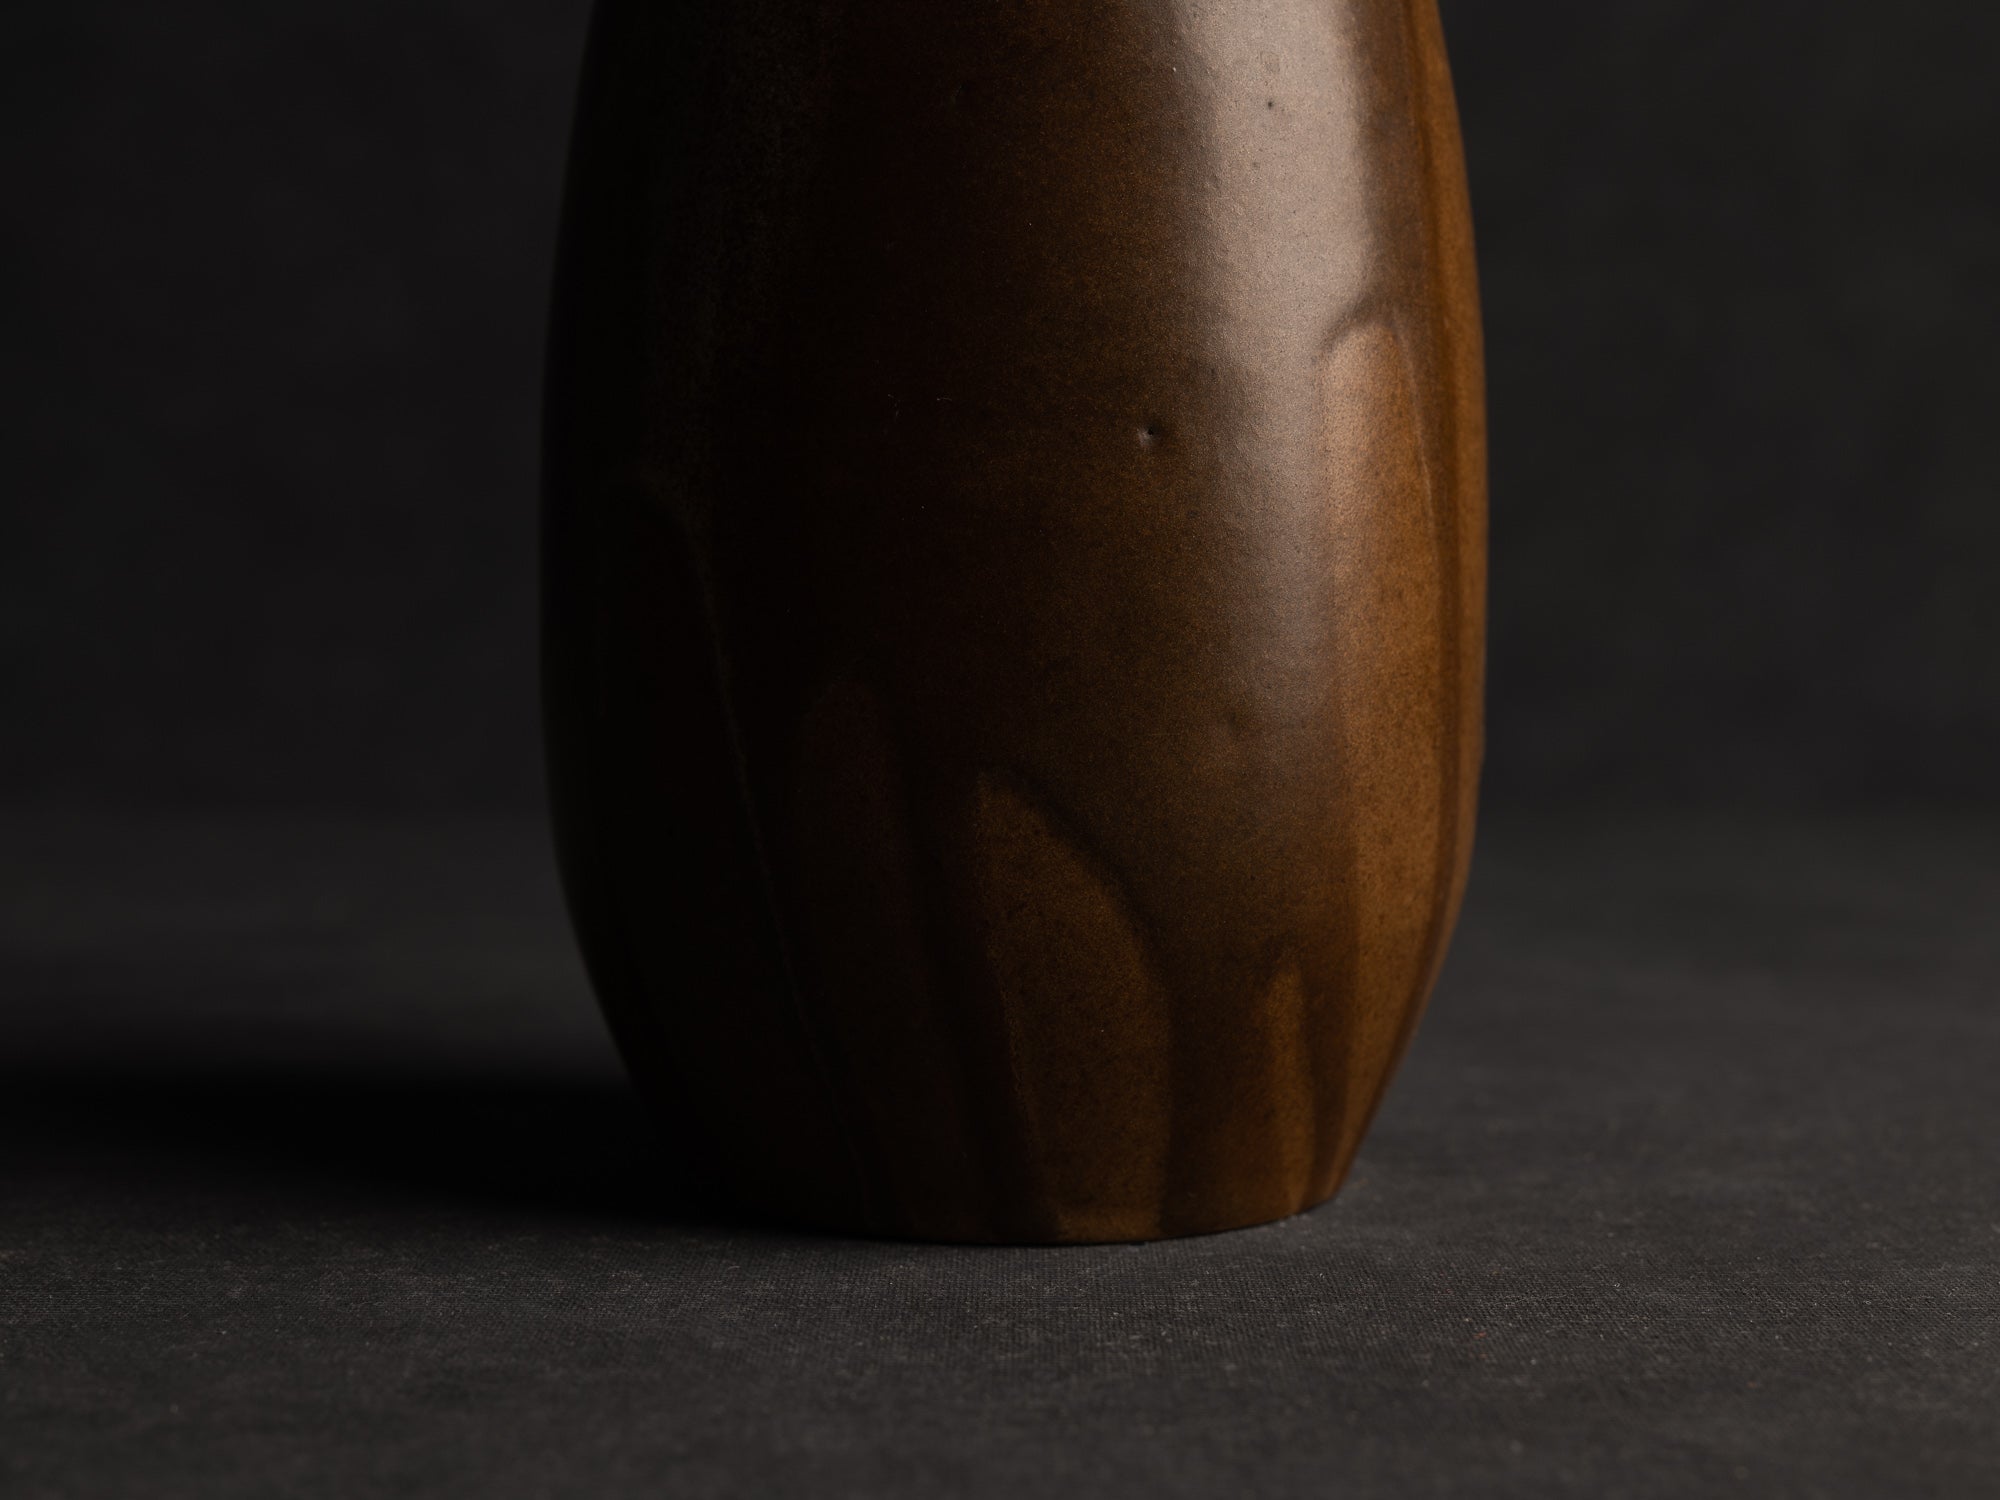 Vase ovoïde en grès japonisant de Léon Pointu, Atelier Pointu, France (vers 1910-25)..School of Carriès, ovoid japonisme stoneware vase by Léon Pointu, Atelier Pointu, France (circa 1910-25)